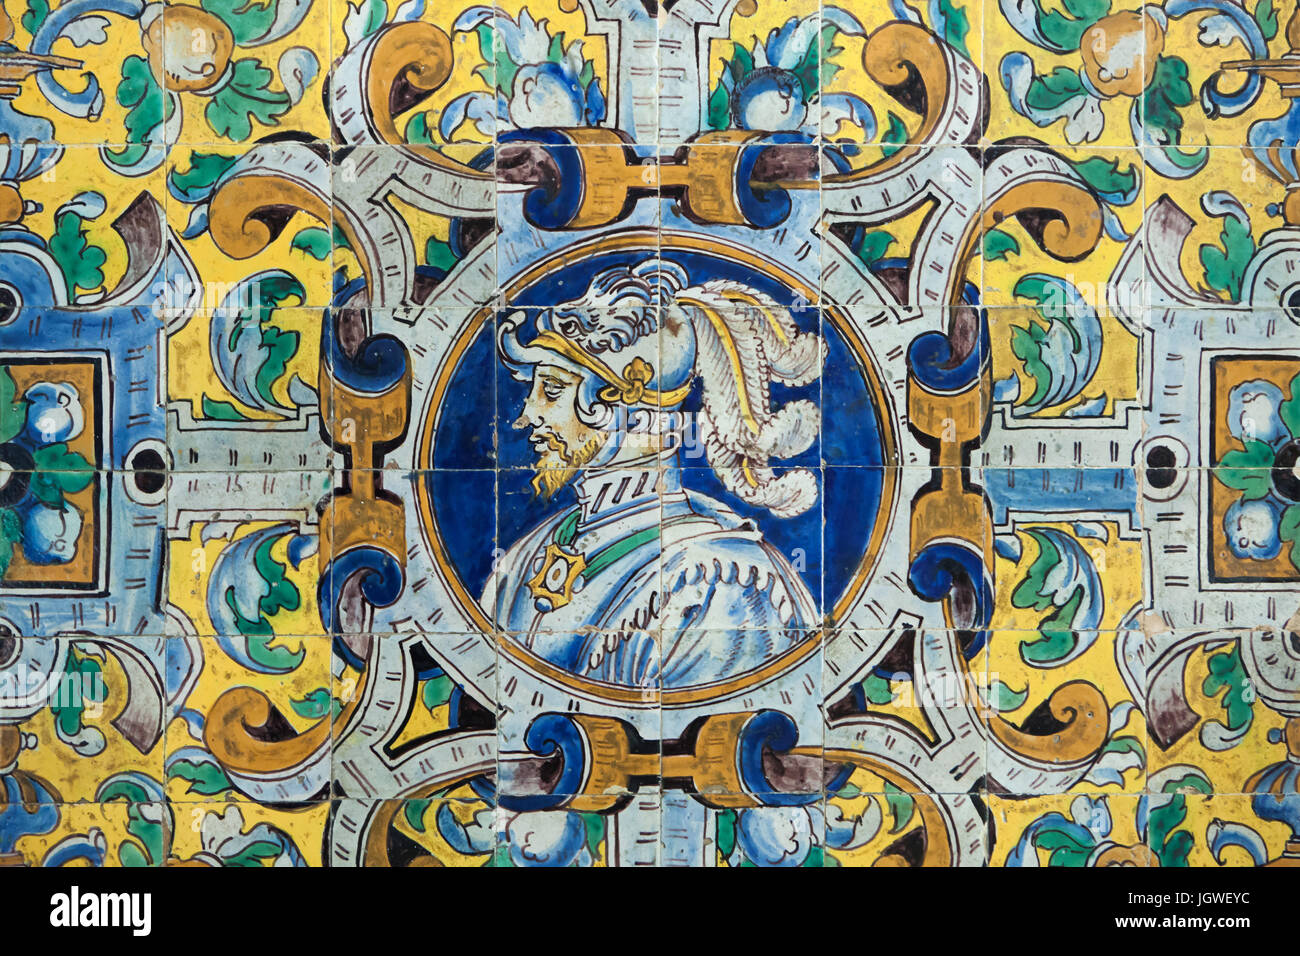 Saint empereur romain Charles V décrite dans le carrelage peint polychrome Renaissance par Cristóbal de Augusta (1577) dans la Sala de las Fiestas (Celebration) dans le Palacio de Carlos V (Palais de Charles V) dans l'Alcázar de Séville à Séville, Andalousie, espagne. Banque D'Images